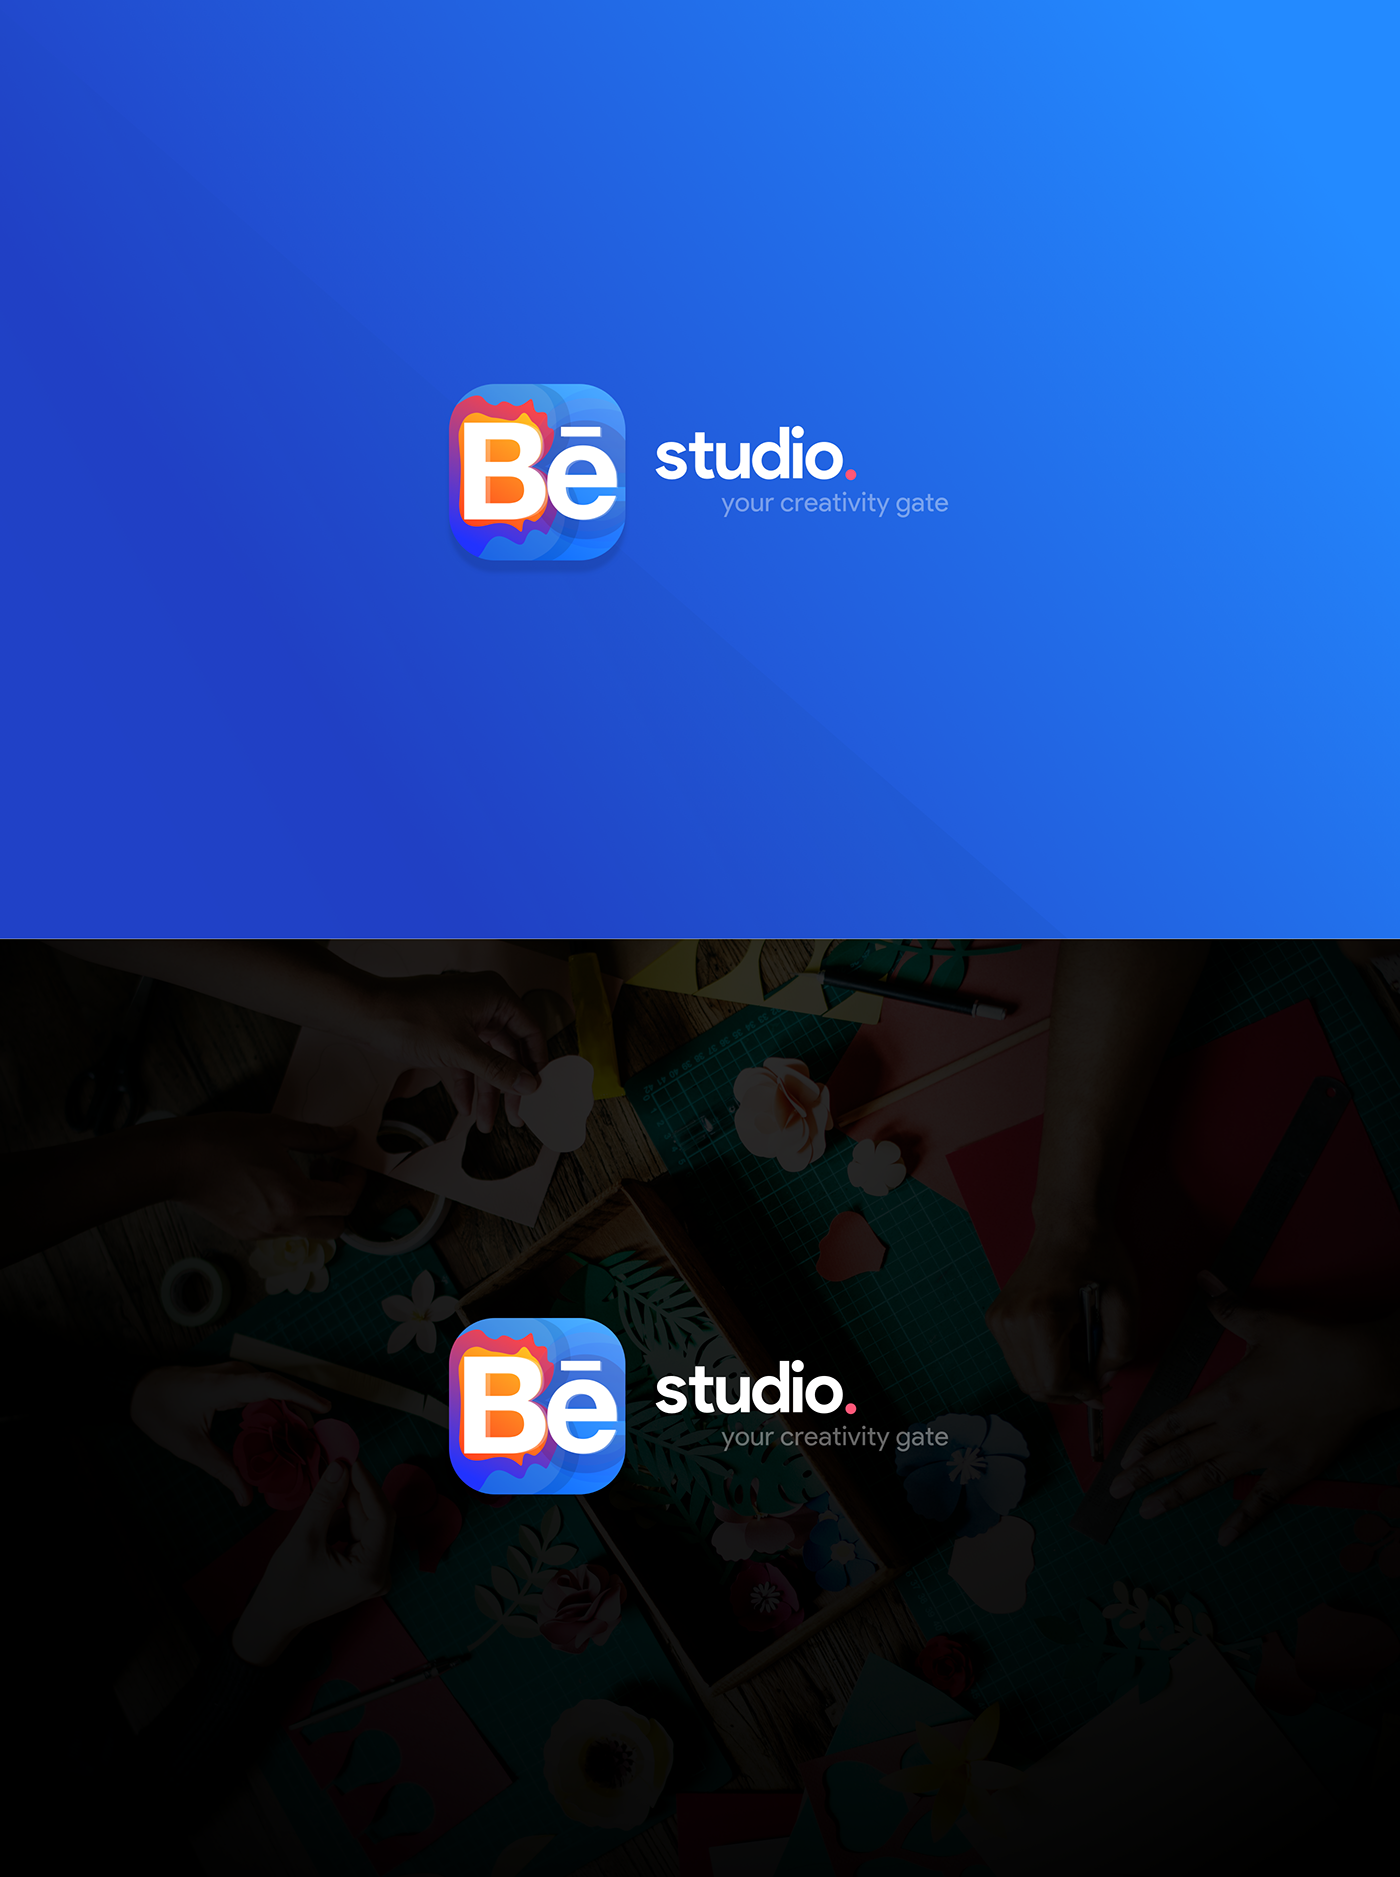 Behance Studio App Concept Brand Identity & UI/UX